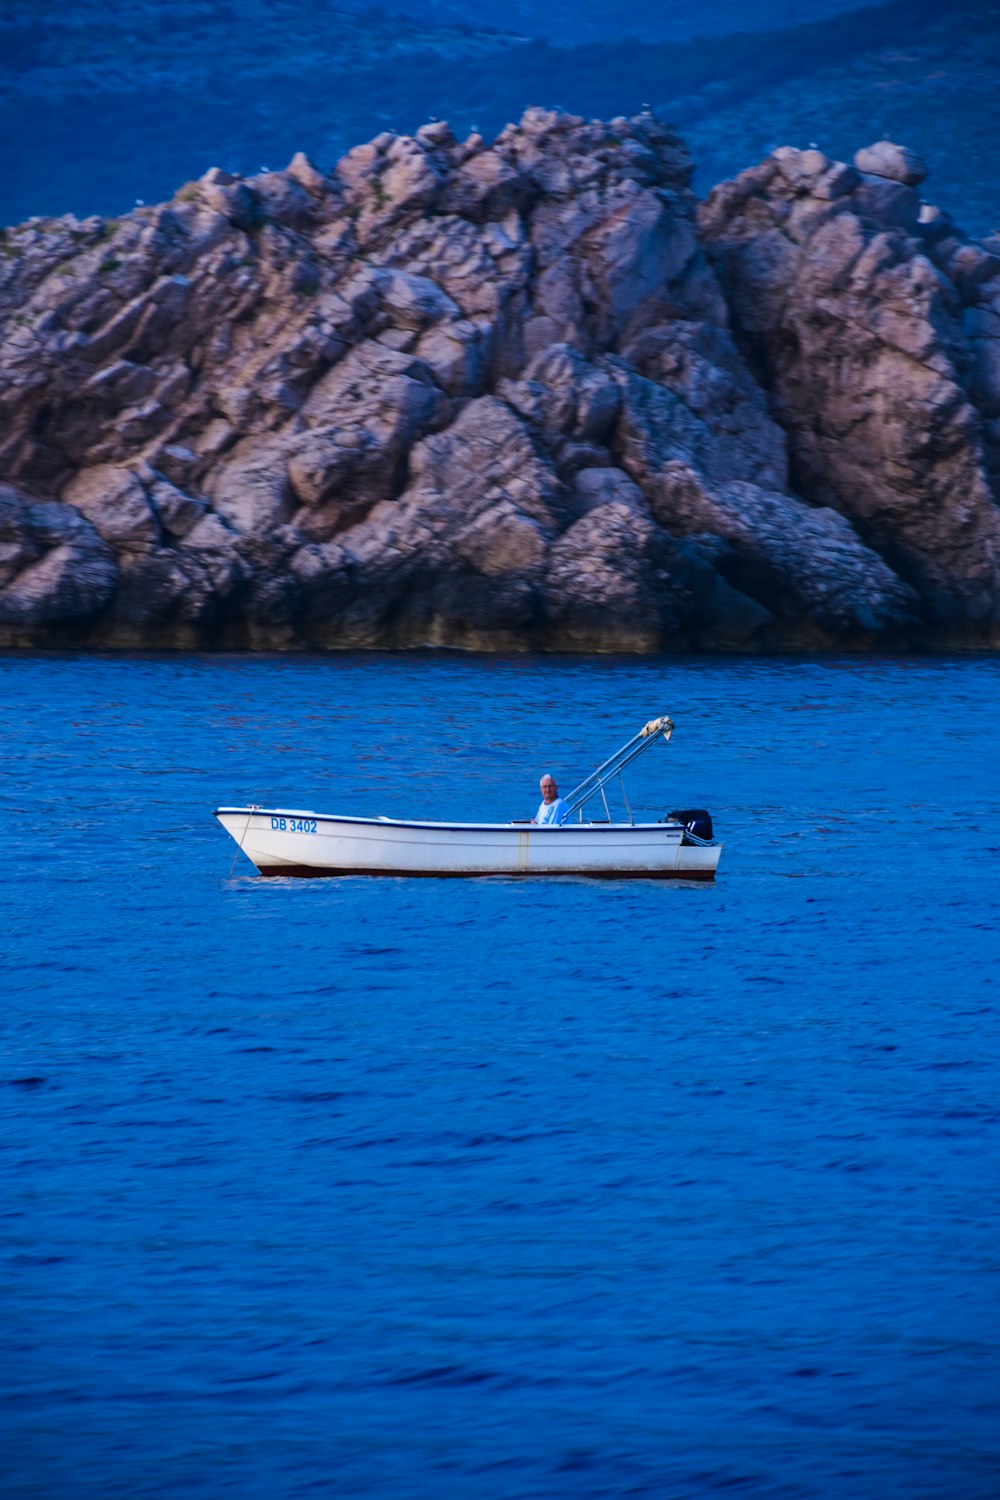 barco branco e azul no mar durante o dia